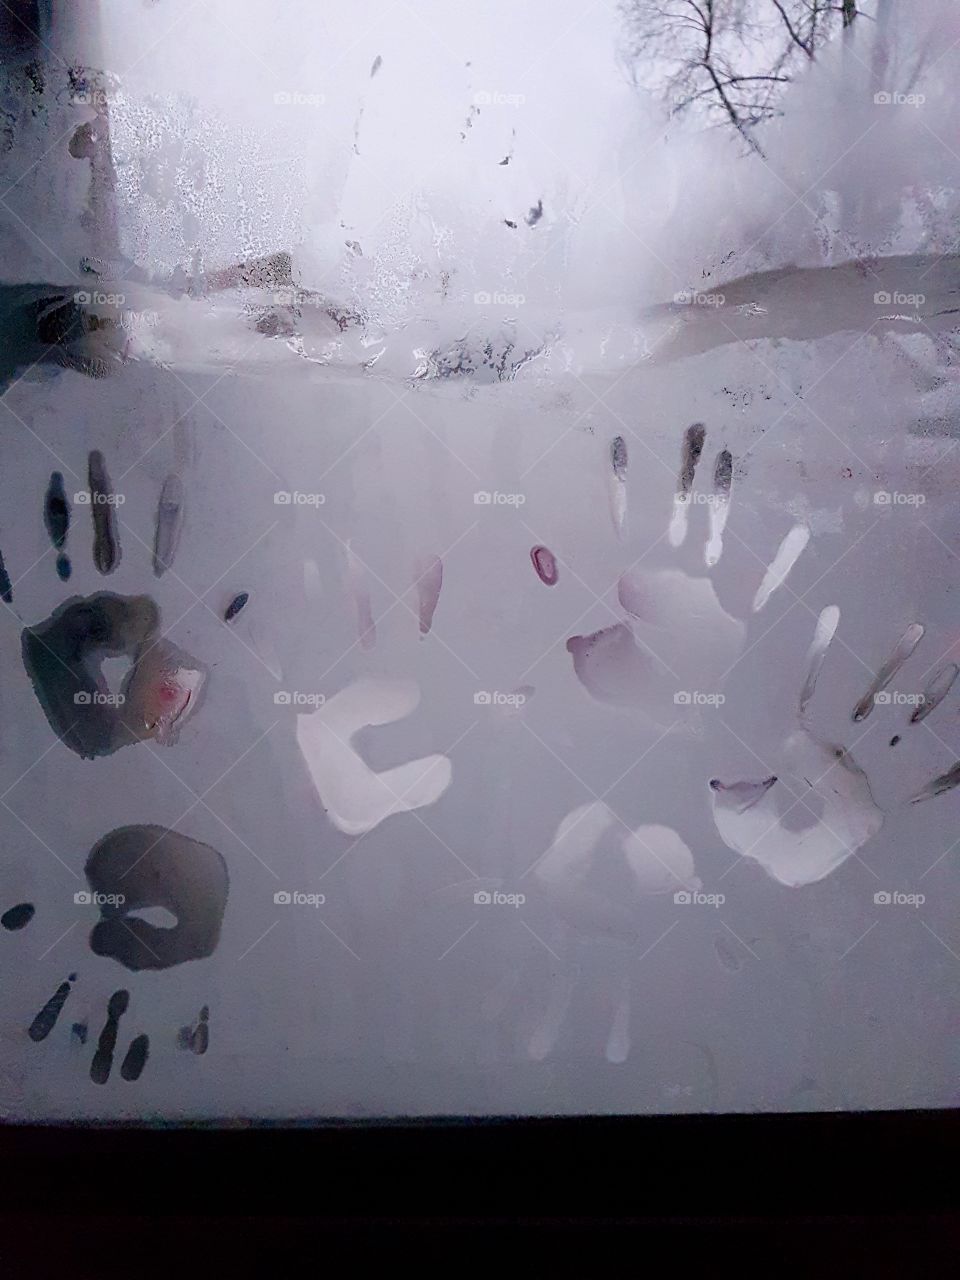 Frozen handprints